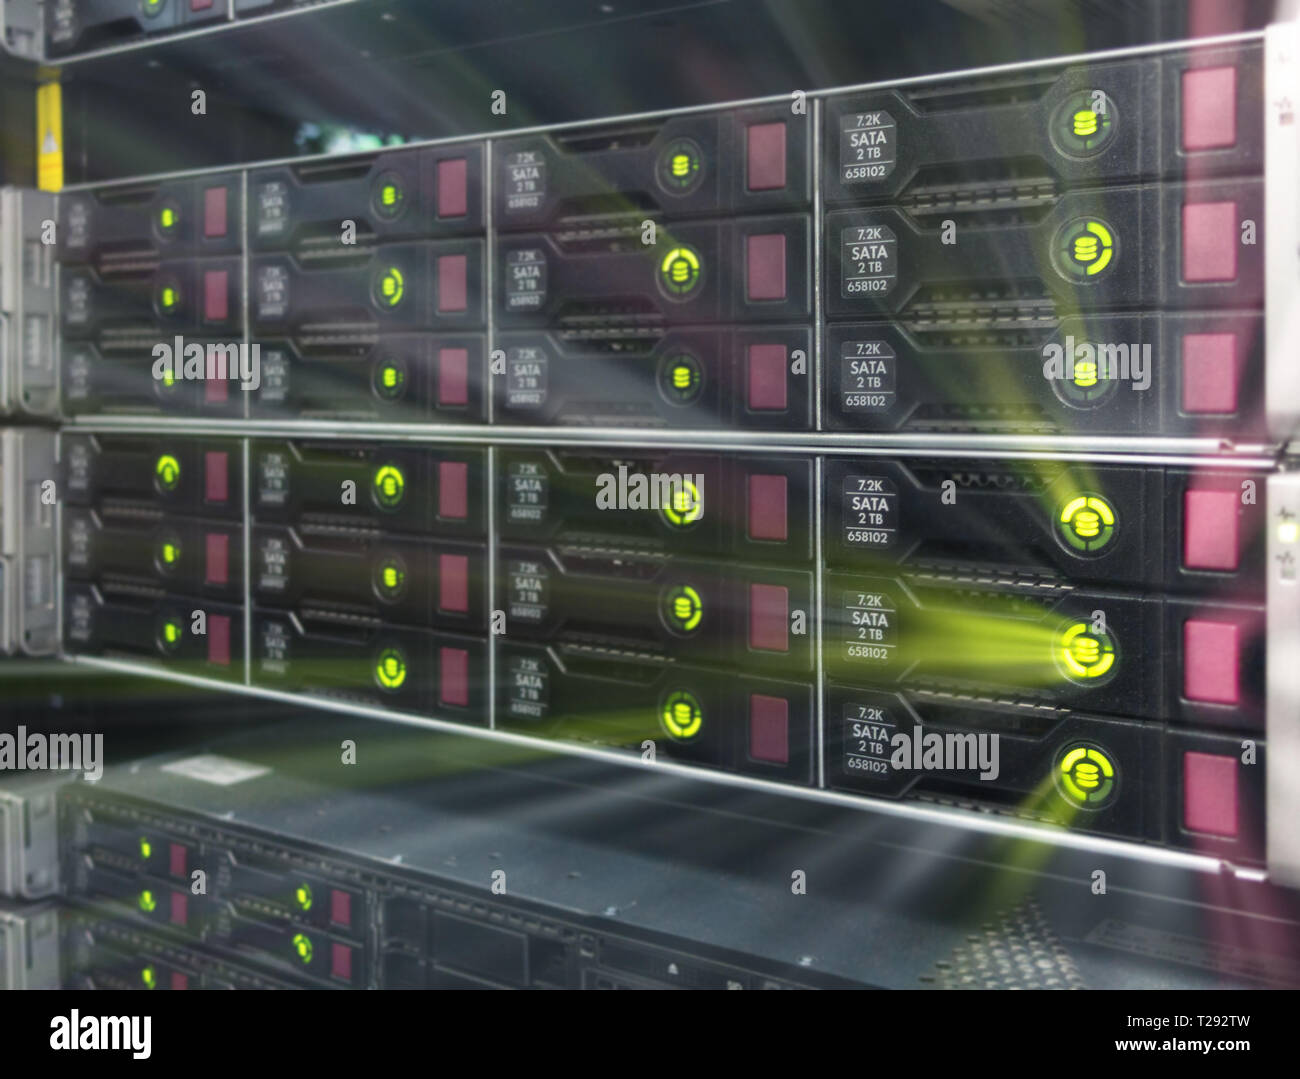 Big HDD Server Rack. Vielen leistungsstarken Servern im Rechenzentrum Serverraum ausgeführt wird. Disk Storage Array. Stockfoto